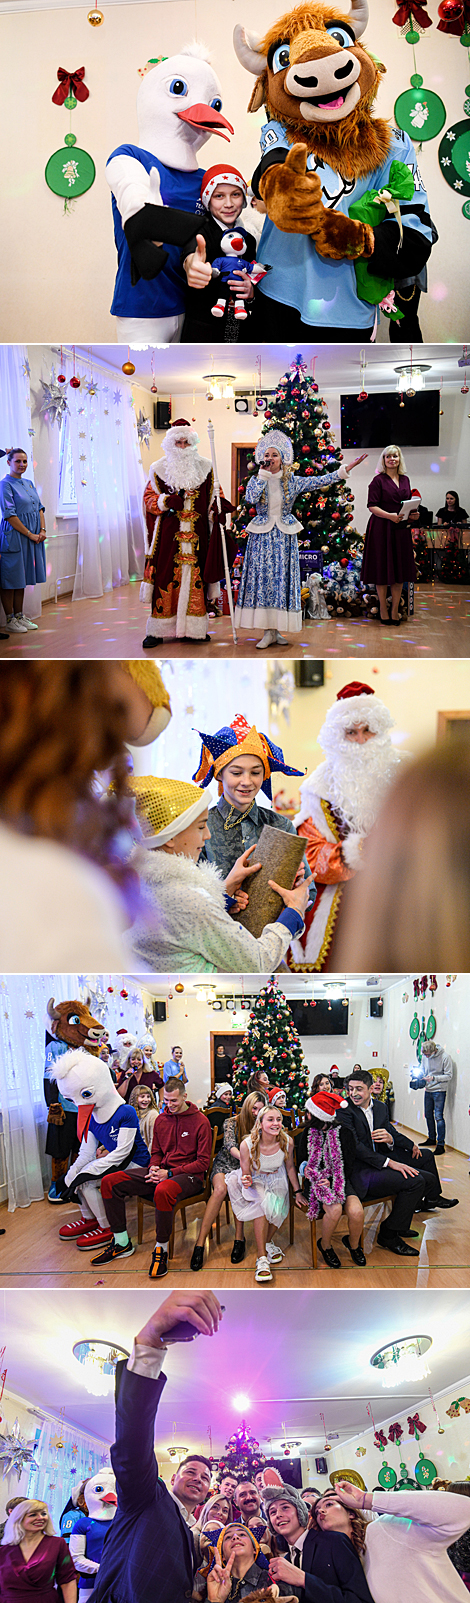 НОК поздравил с новогодними праздниками воспитанников Детского городка в Минске